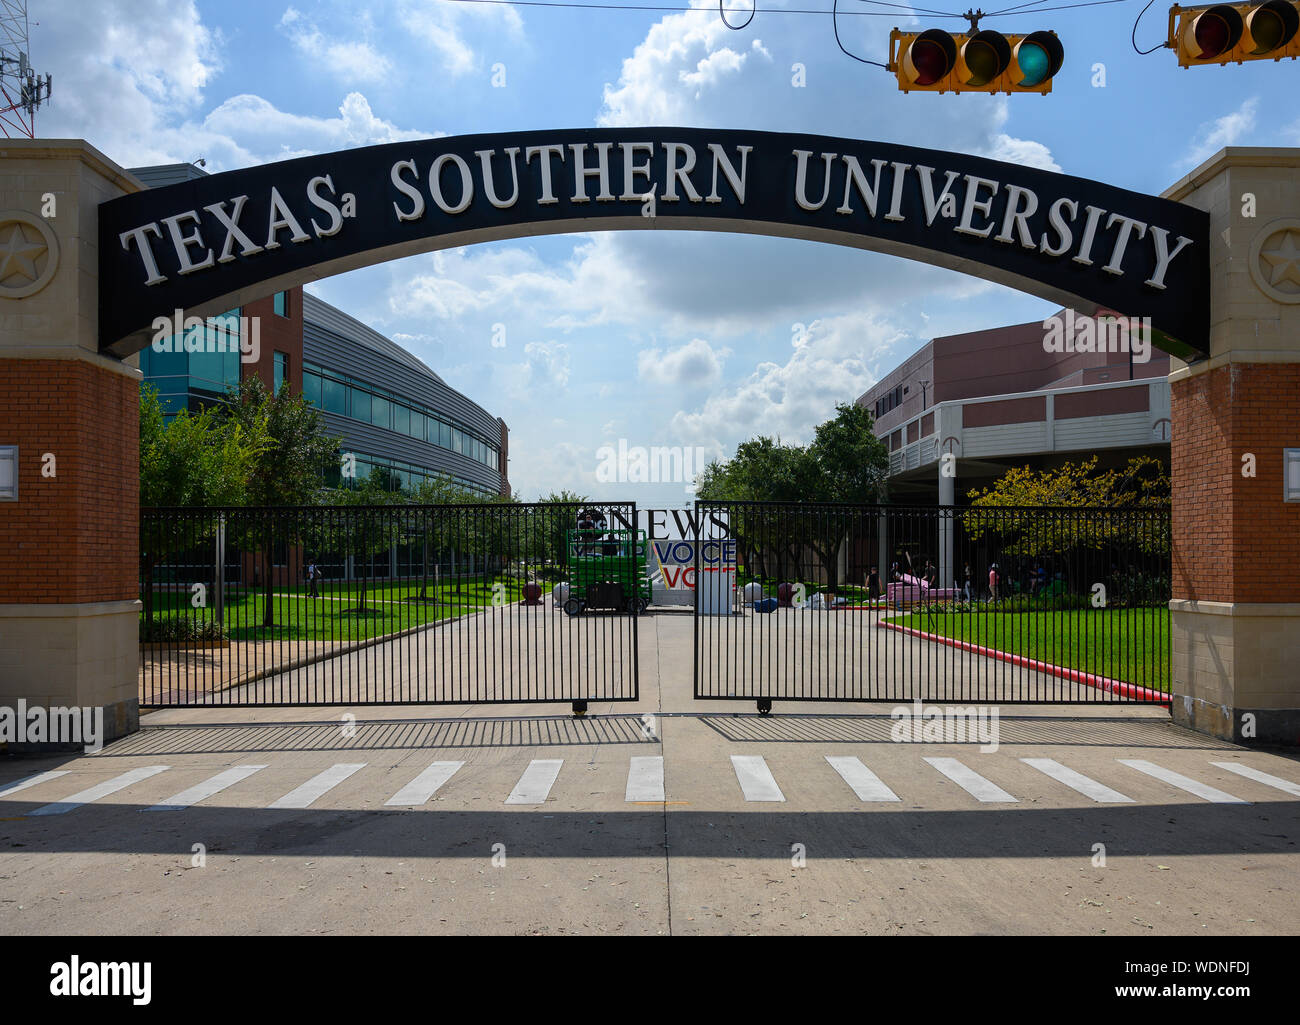 Houston, Texas - 29. August 2019: Texas Southern University (TSU) ist eine öffentliche historisch schwarzen Universität in Houston, Texas. Stockfoto